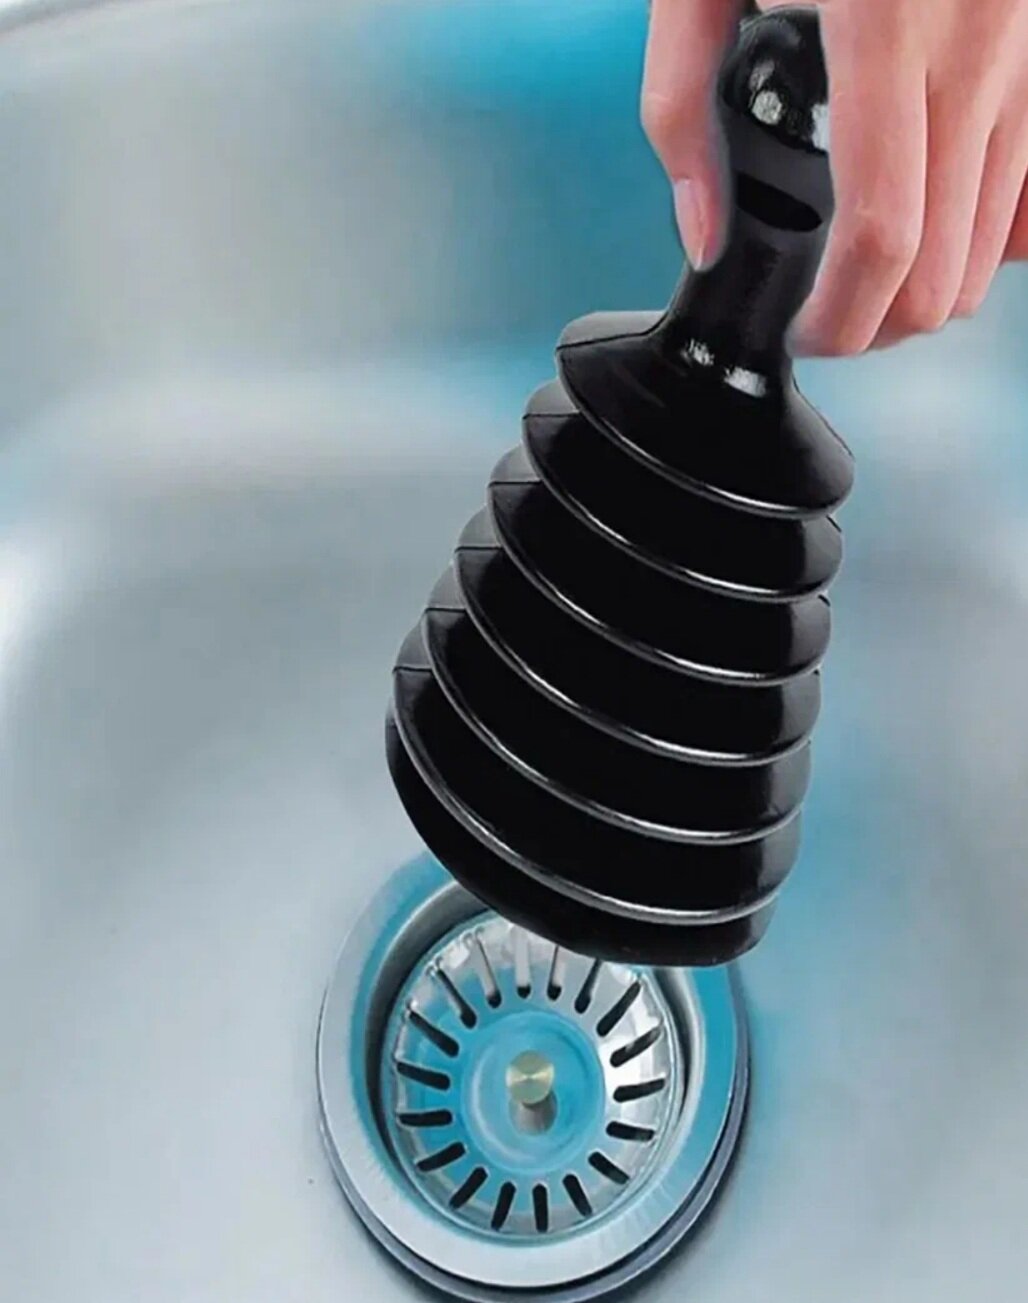 Вантуз -гармошка для очистки раковины и ванны от засоров, для прочистки труб - фотография № 1